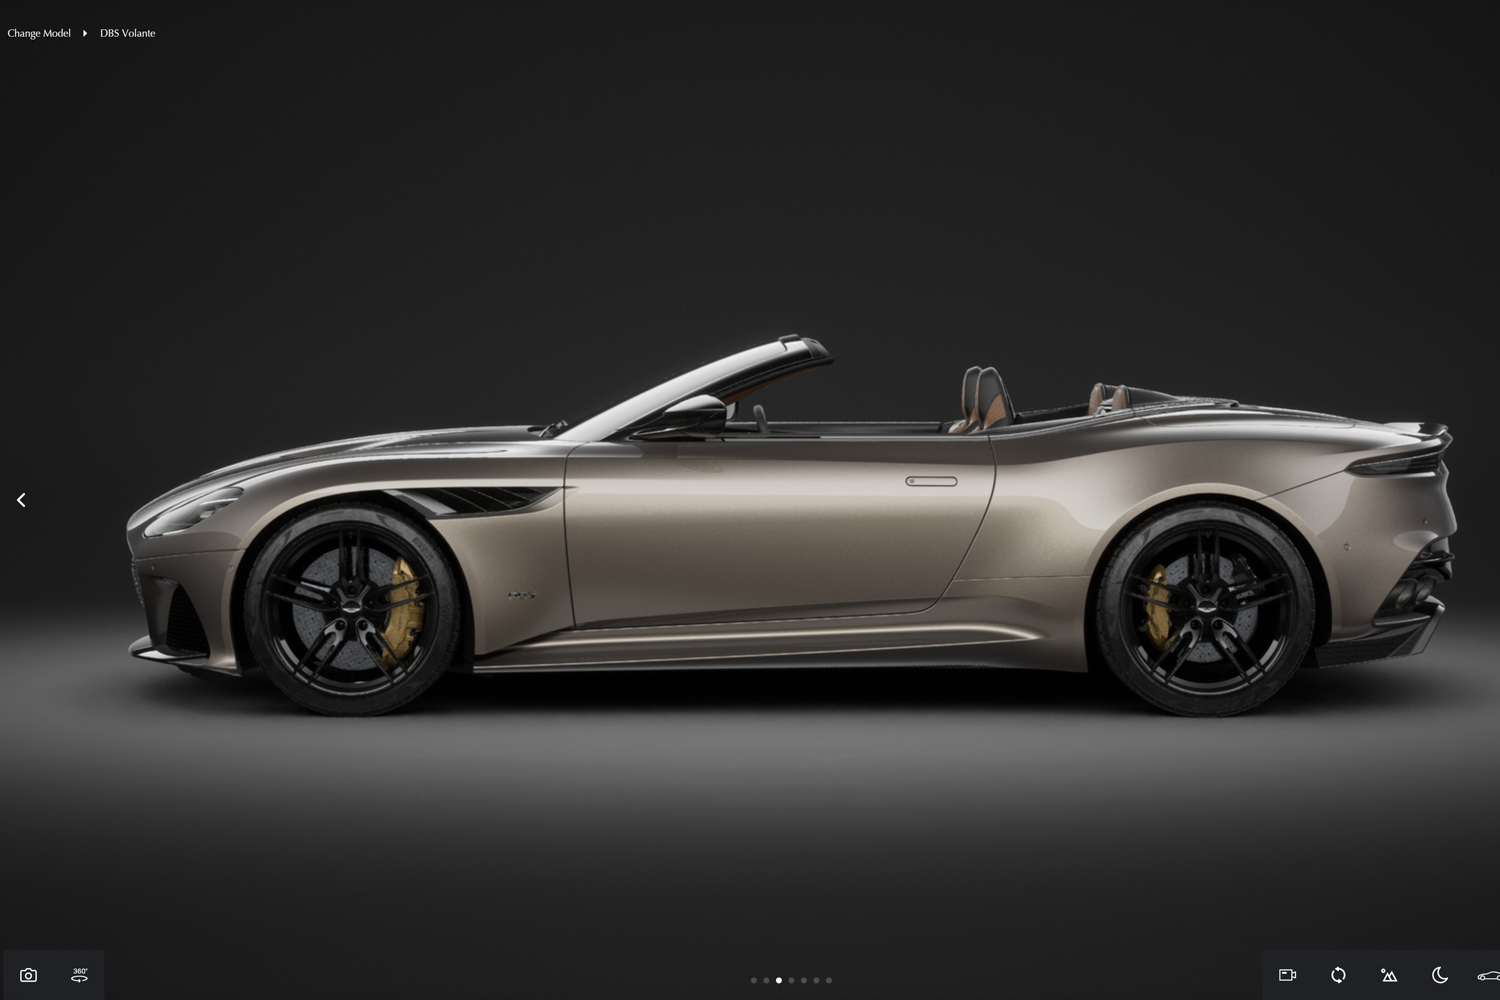 Aston Martin shows off 2022 update